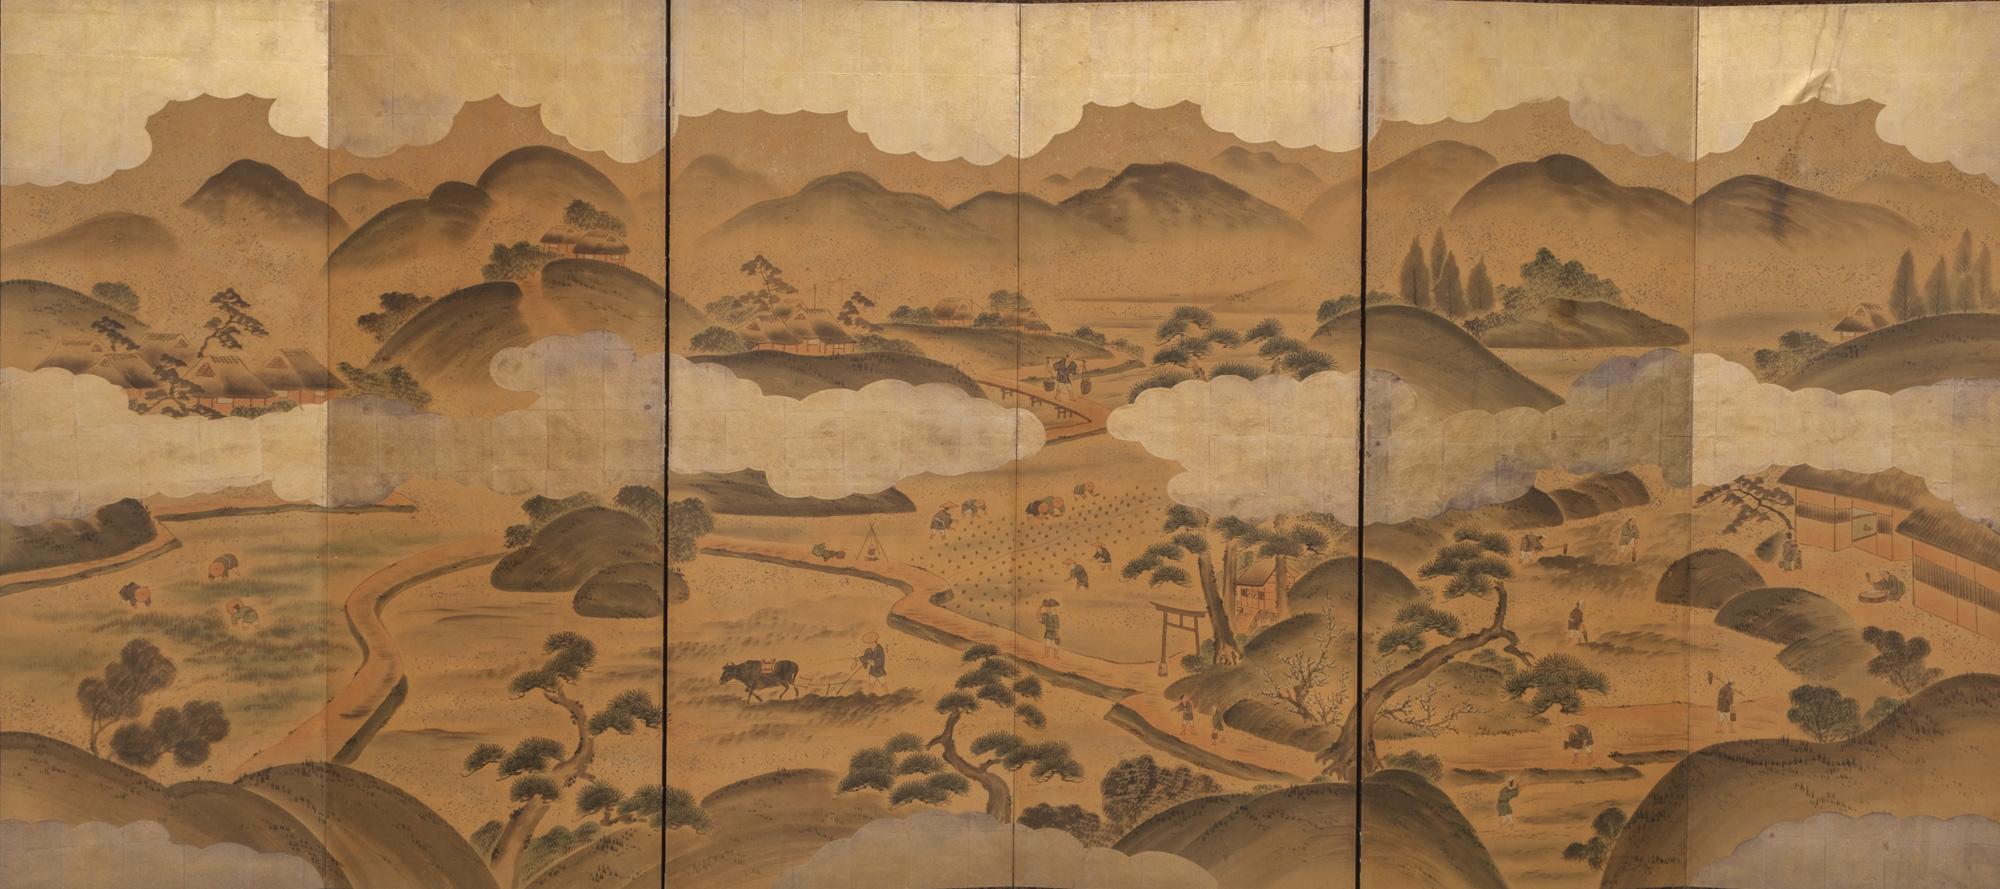 Faszinierender großer sechsteiliger Byôbu (Paravent) mit einer detaillierten Genremalerei auf goldfarbenem Blattsilber mit verschiedenen Szenen von Menschen bei der Arbeit in einem ländlichen Bergdorf während der Edo-Zeit.

Die Landwirte arbeiten